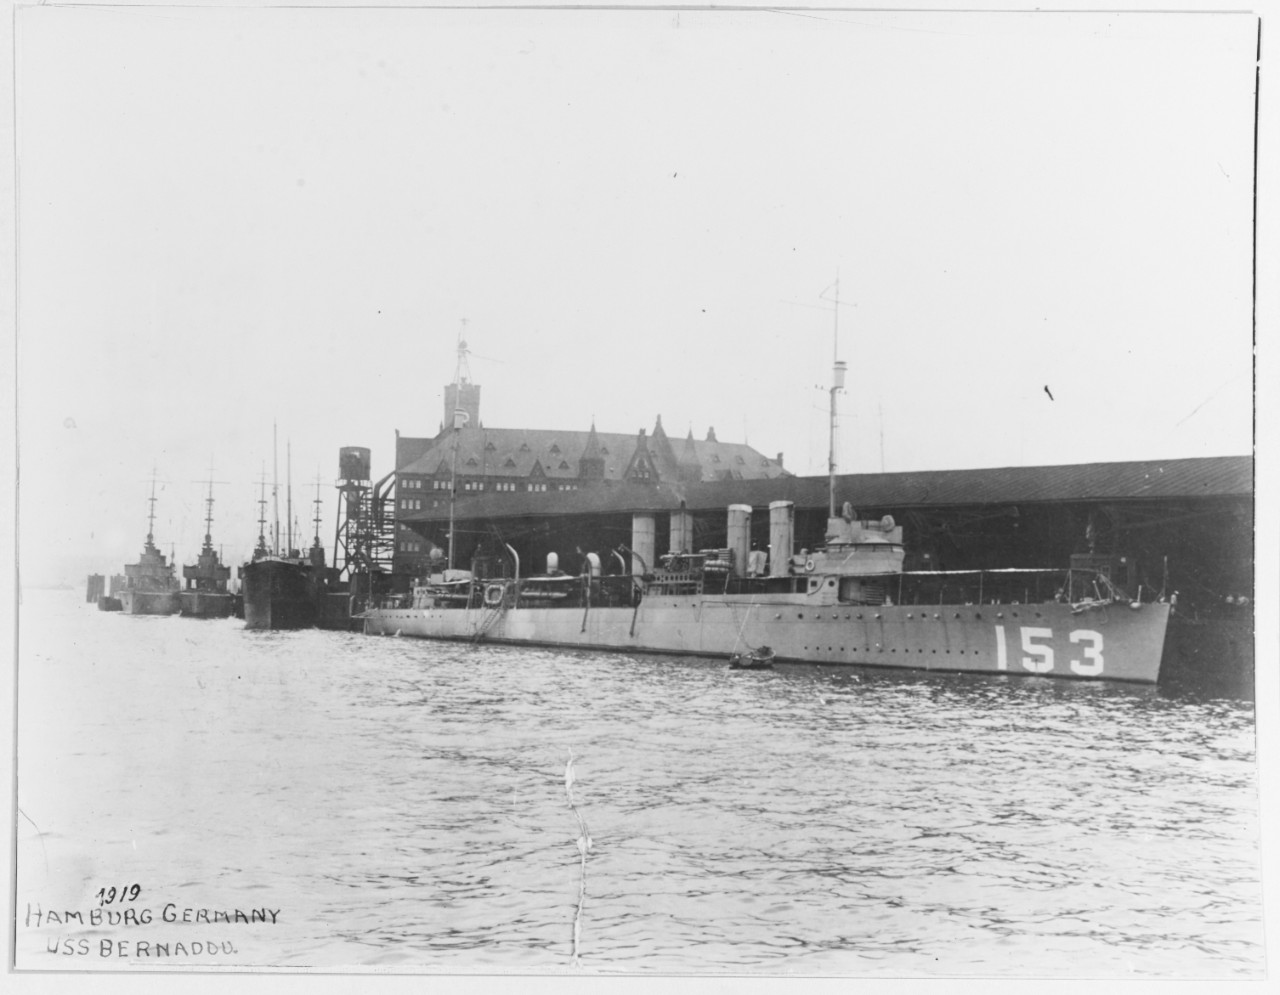 USS BERNADOU (DD-153)